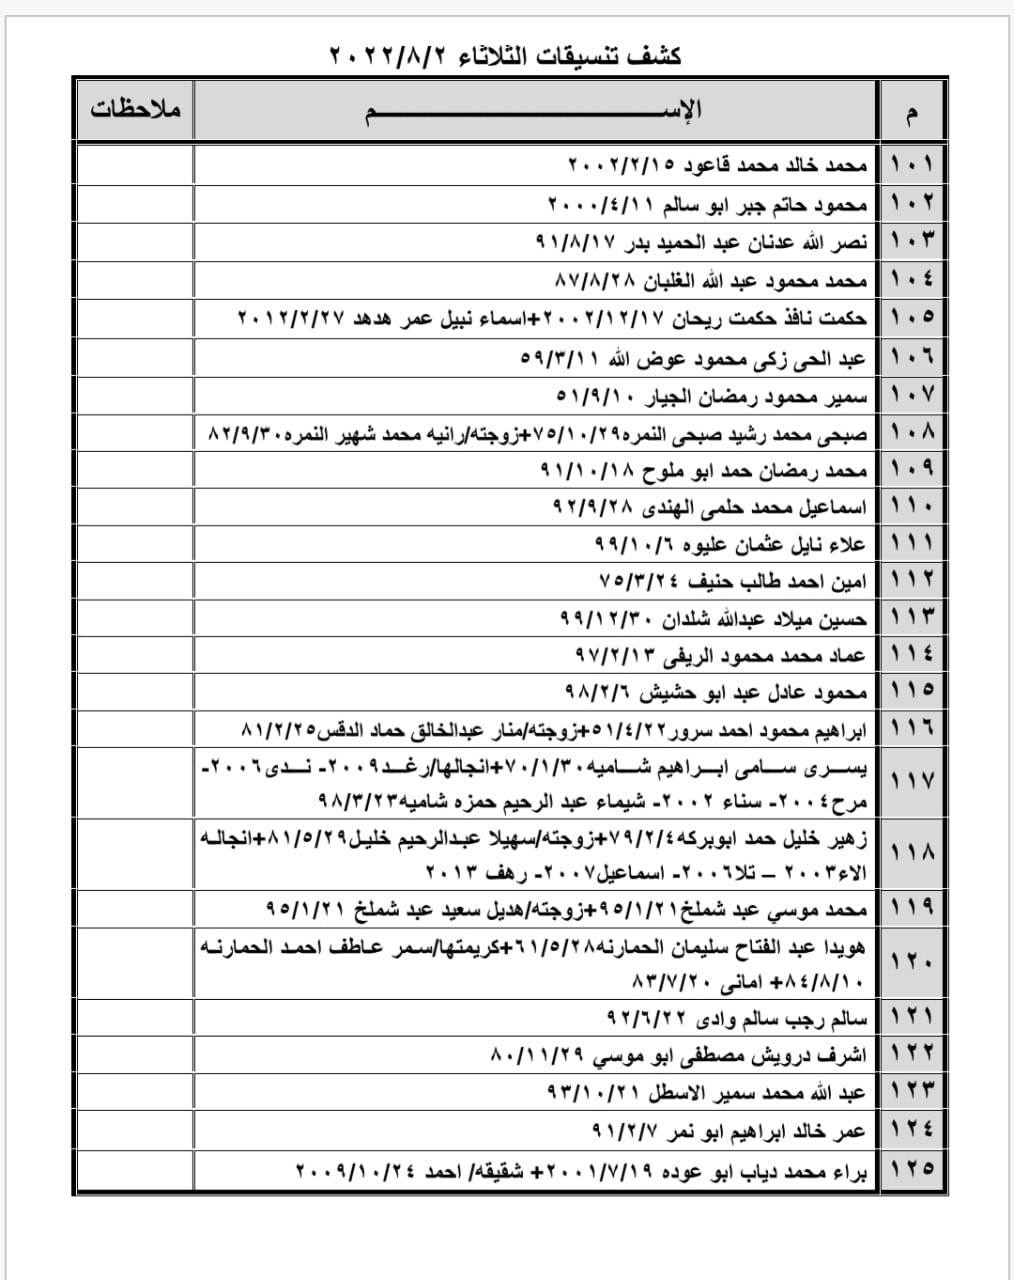 بالأسماء: وصول كشف تنسيقات مصرية للسفر عبر معبر رفح يوم الثلاثاء 2 أغسطس 2022